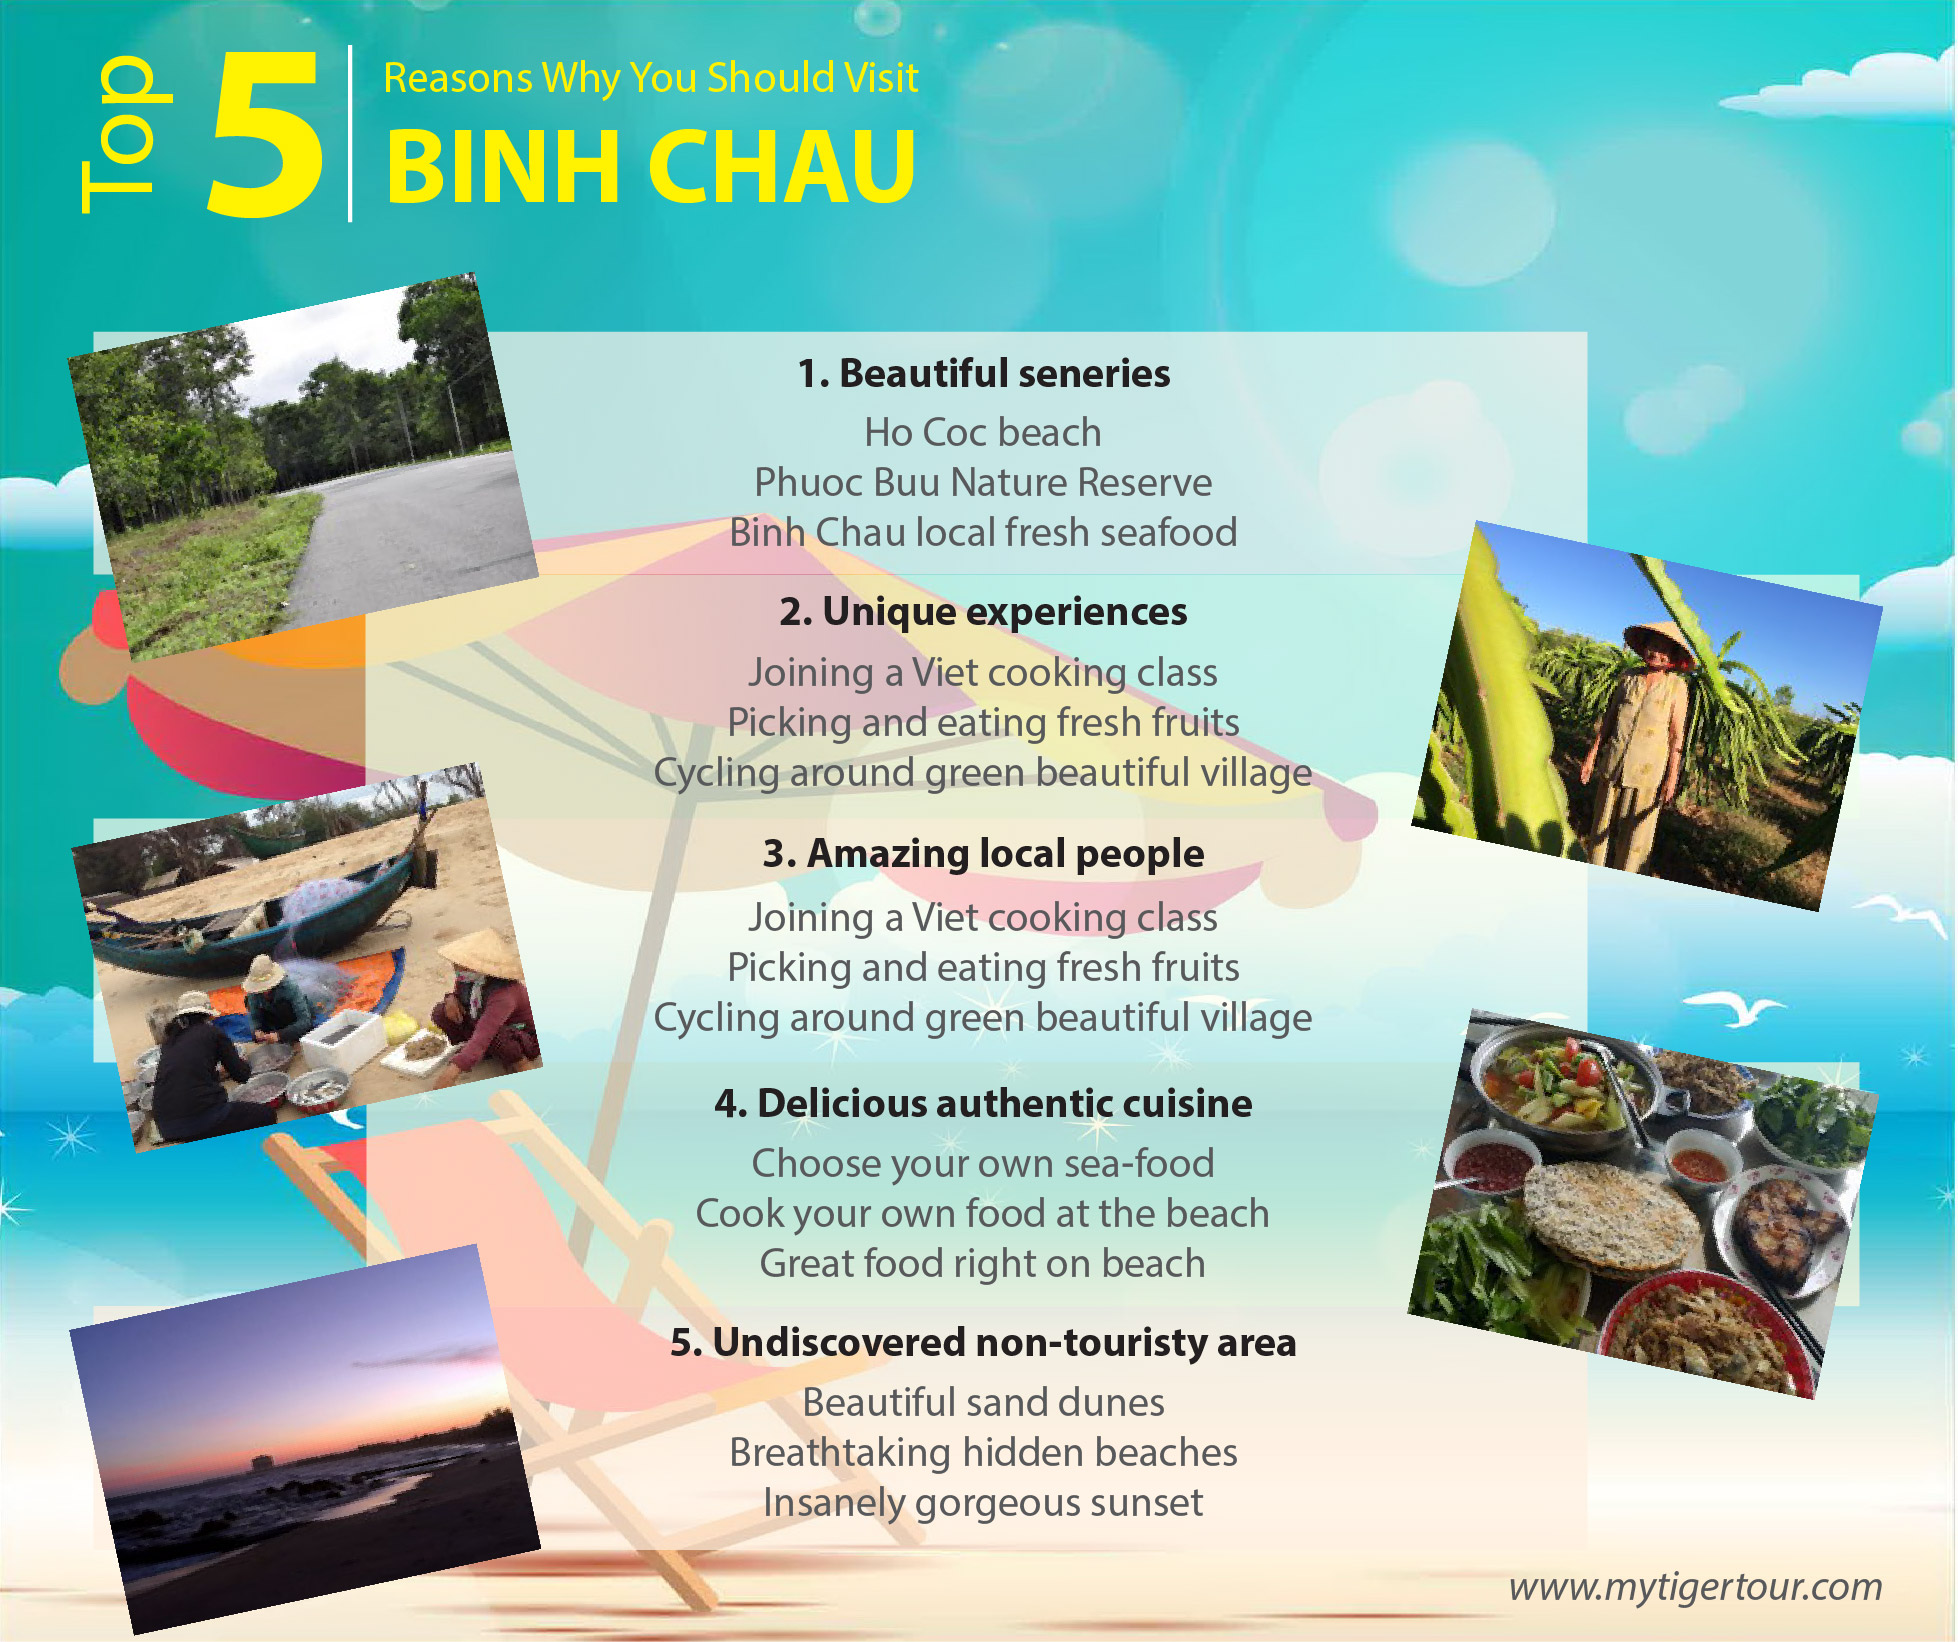 Binh Chau Hot Spring